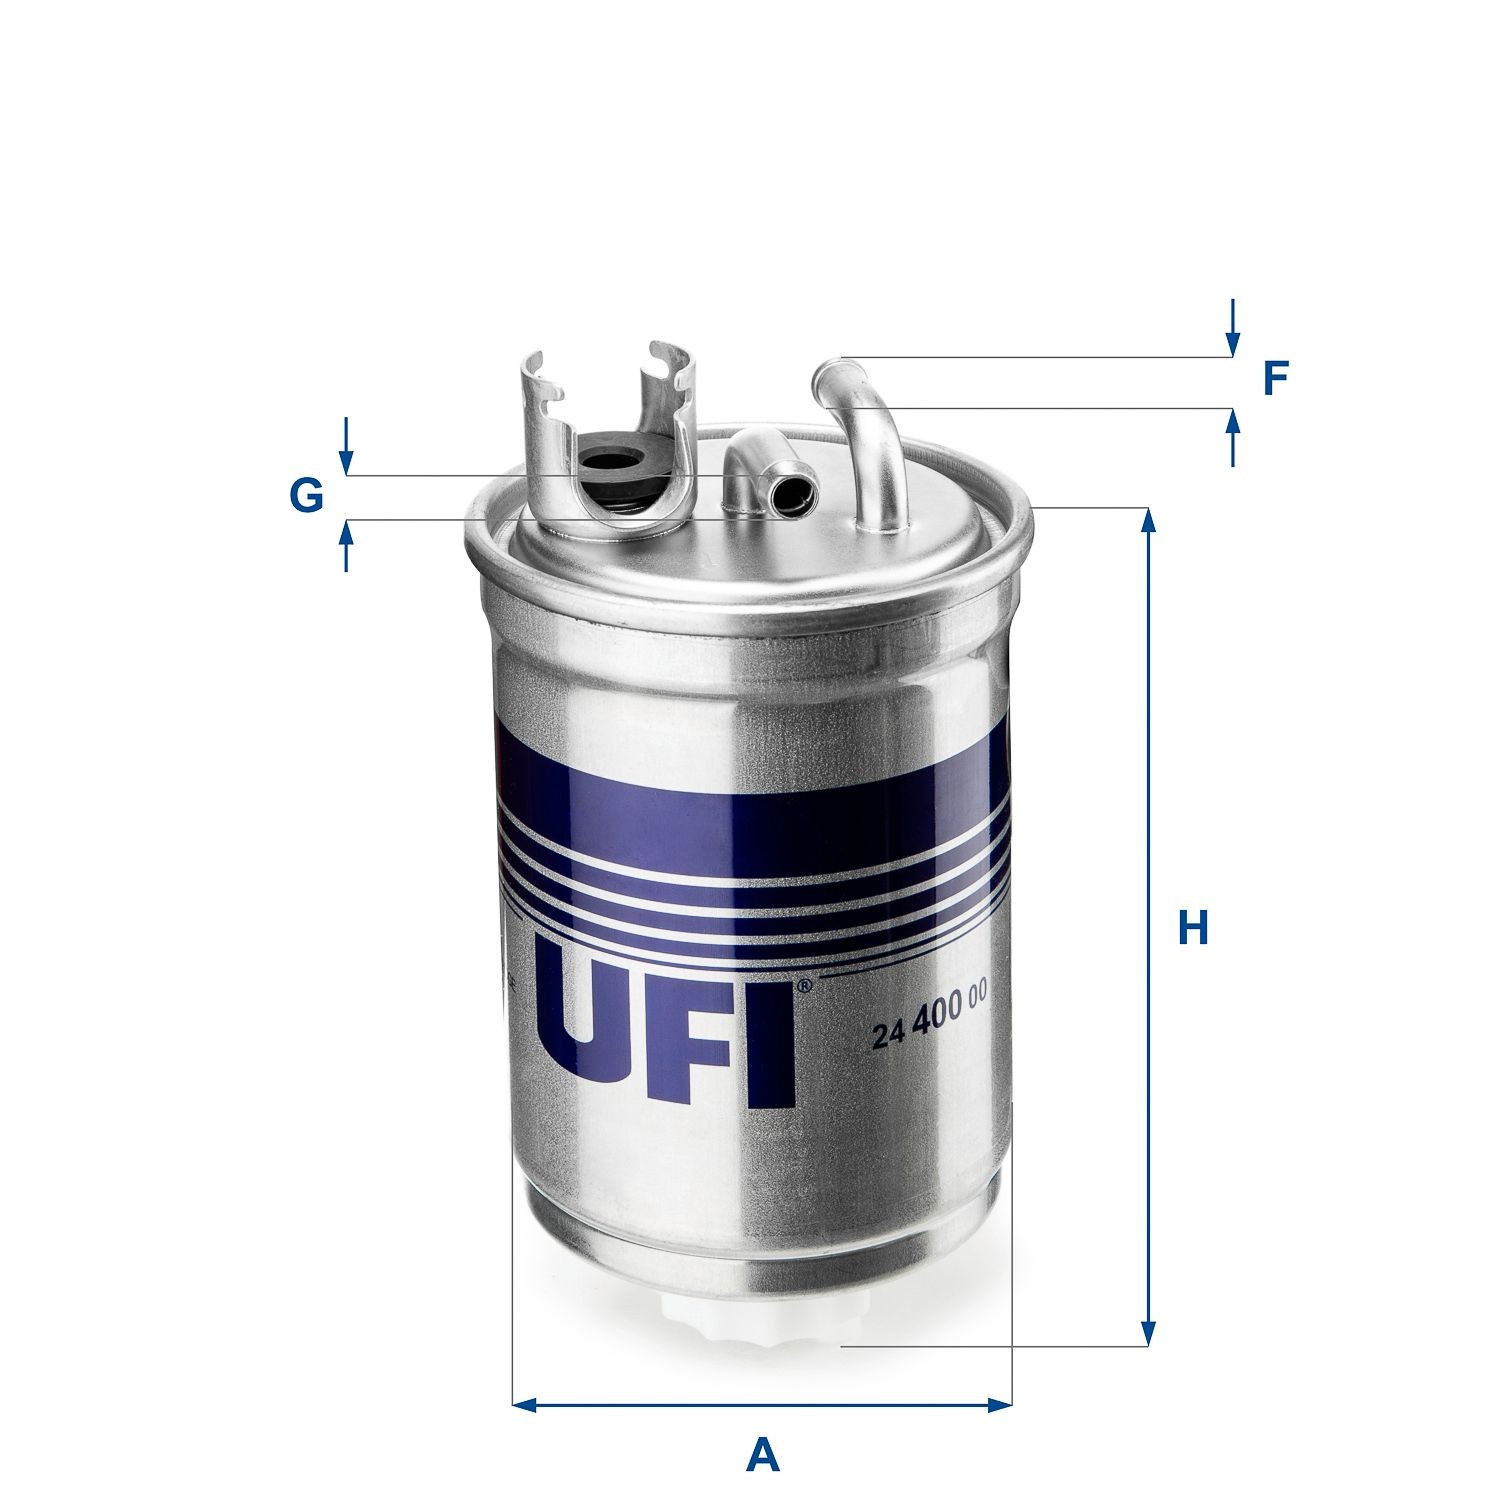 UFI 24.400.00 Fuel filter Filter Insert, 8mm, 8mm